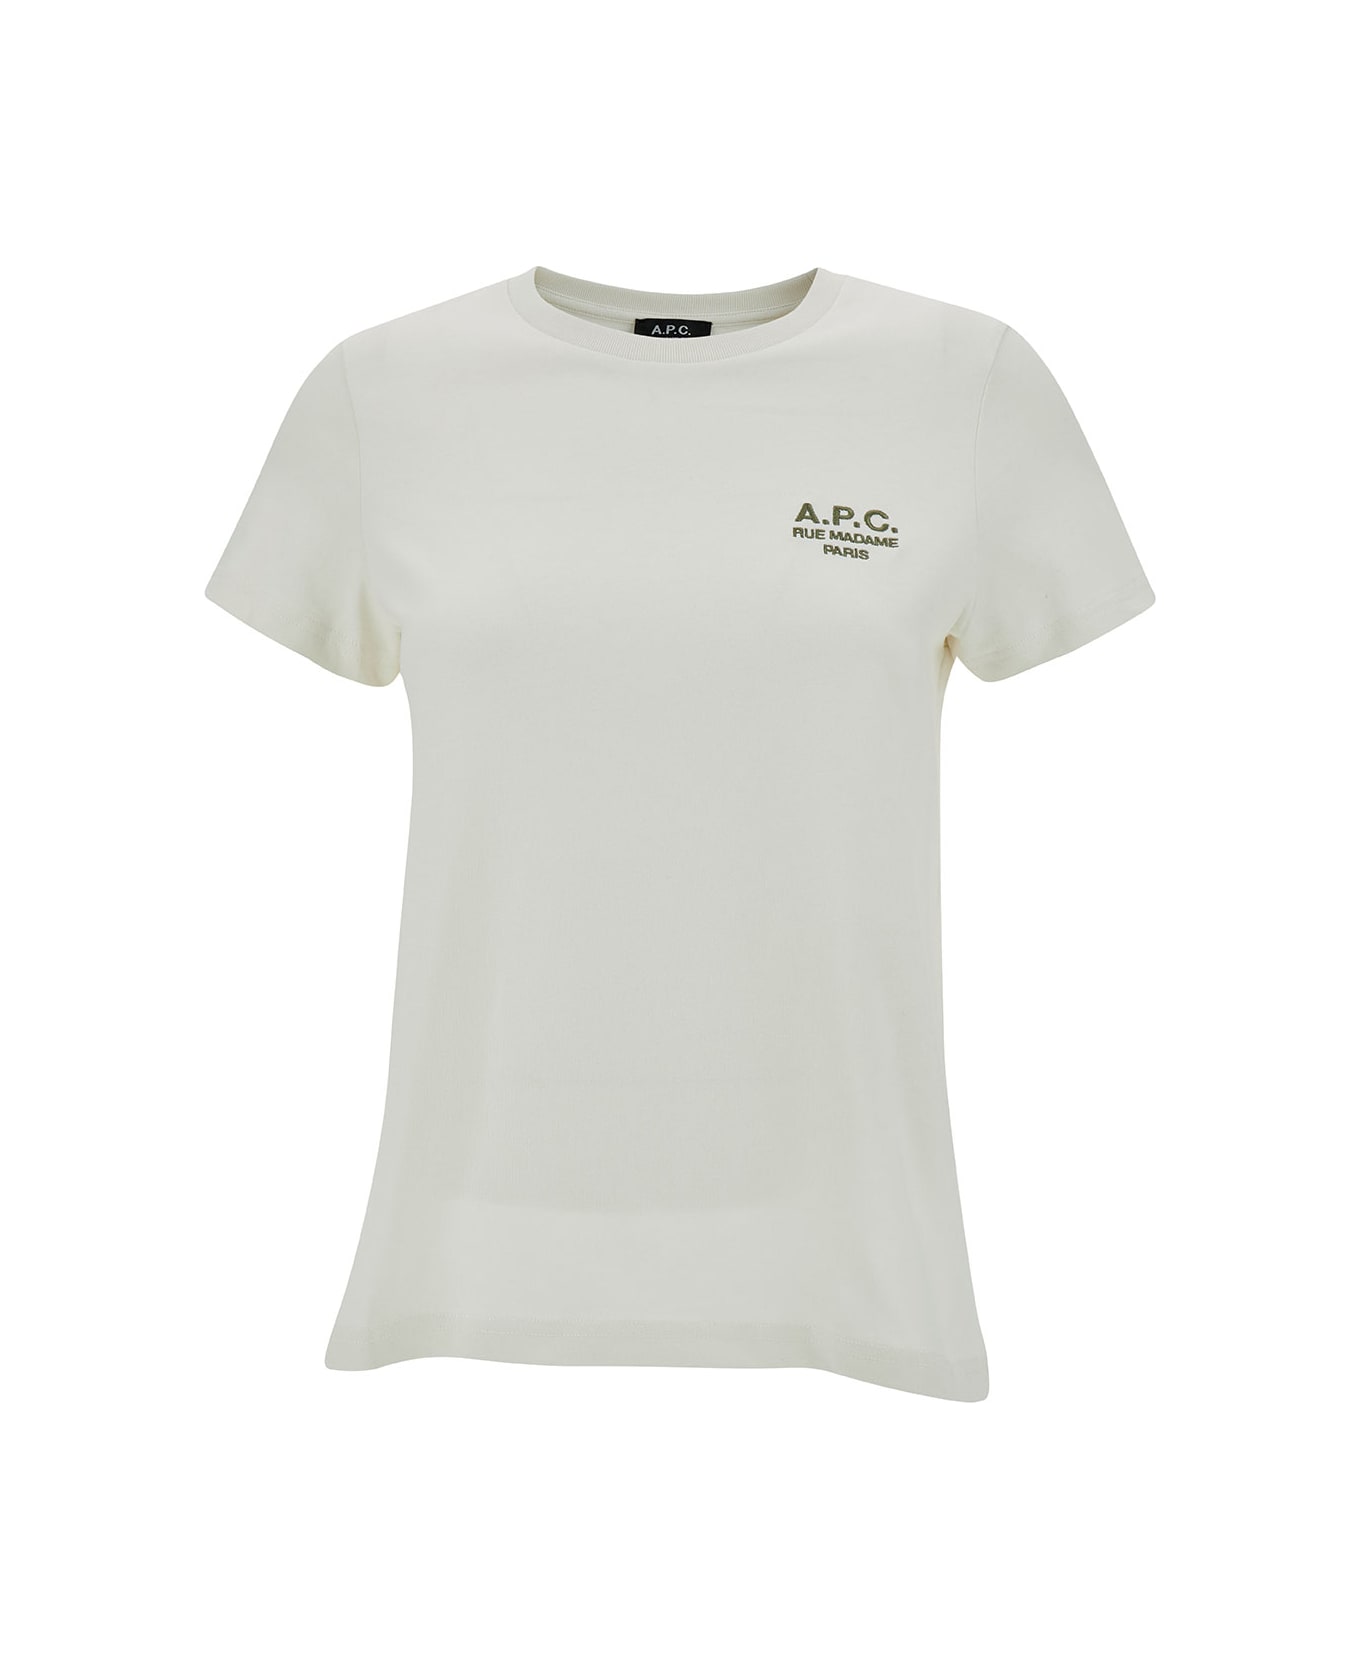 A.P.C. Denise Logo Cotton T-shirt - Craie Tシャツ